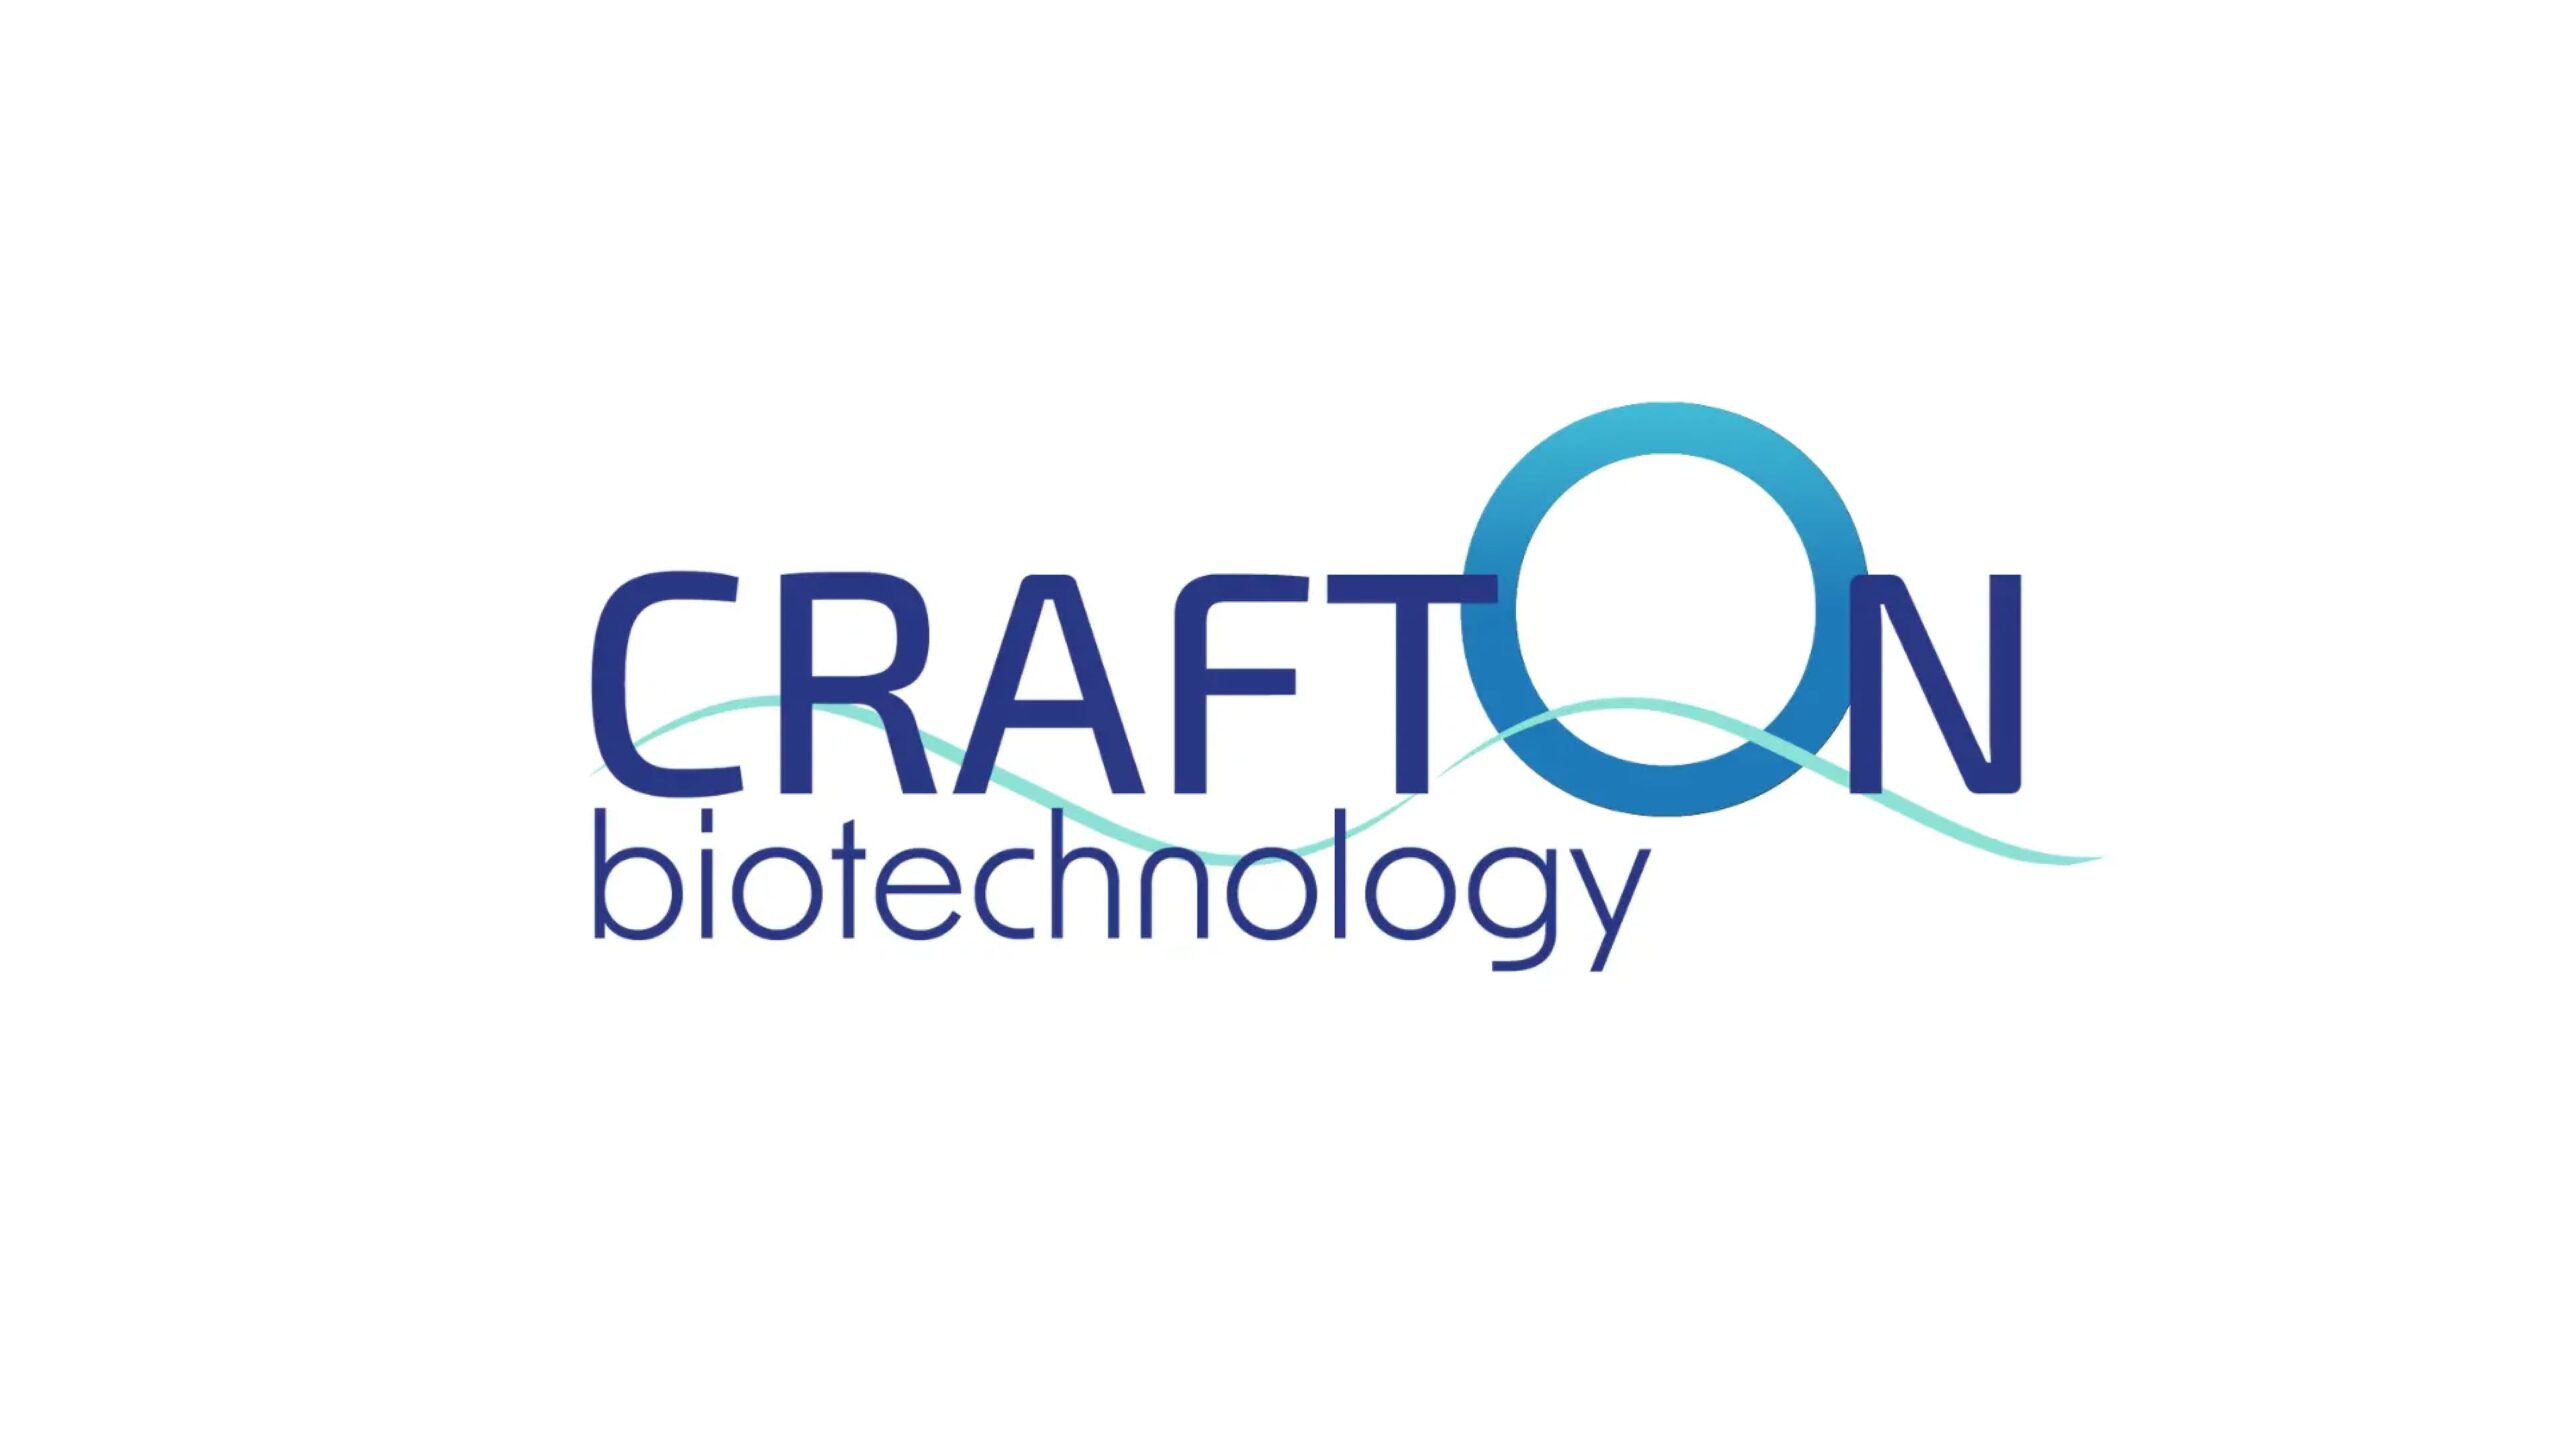 Crafton Biotechnology 株式会社がシードラウンドにて1億円の資金調達